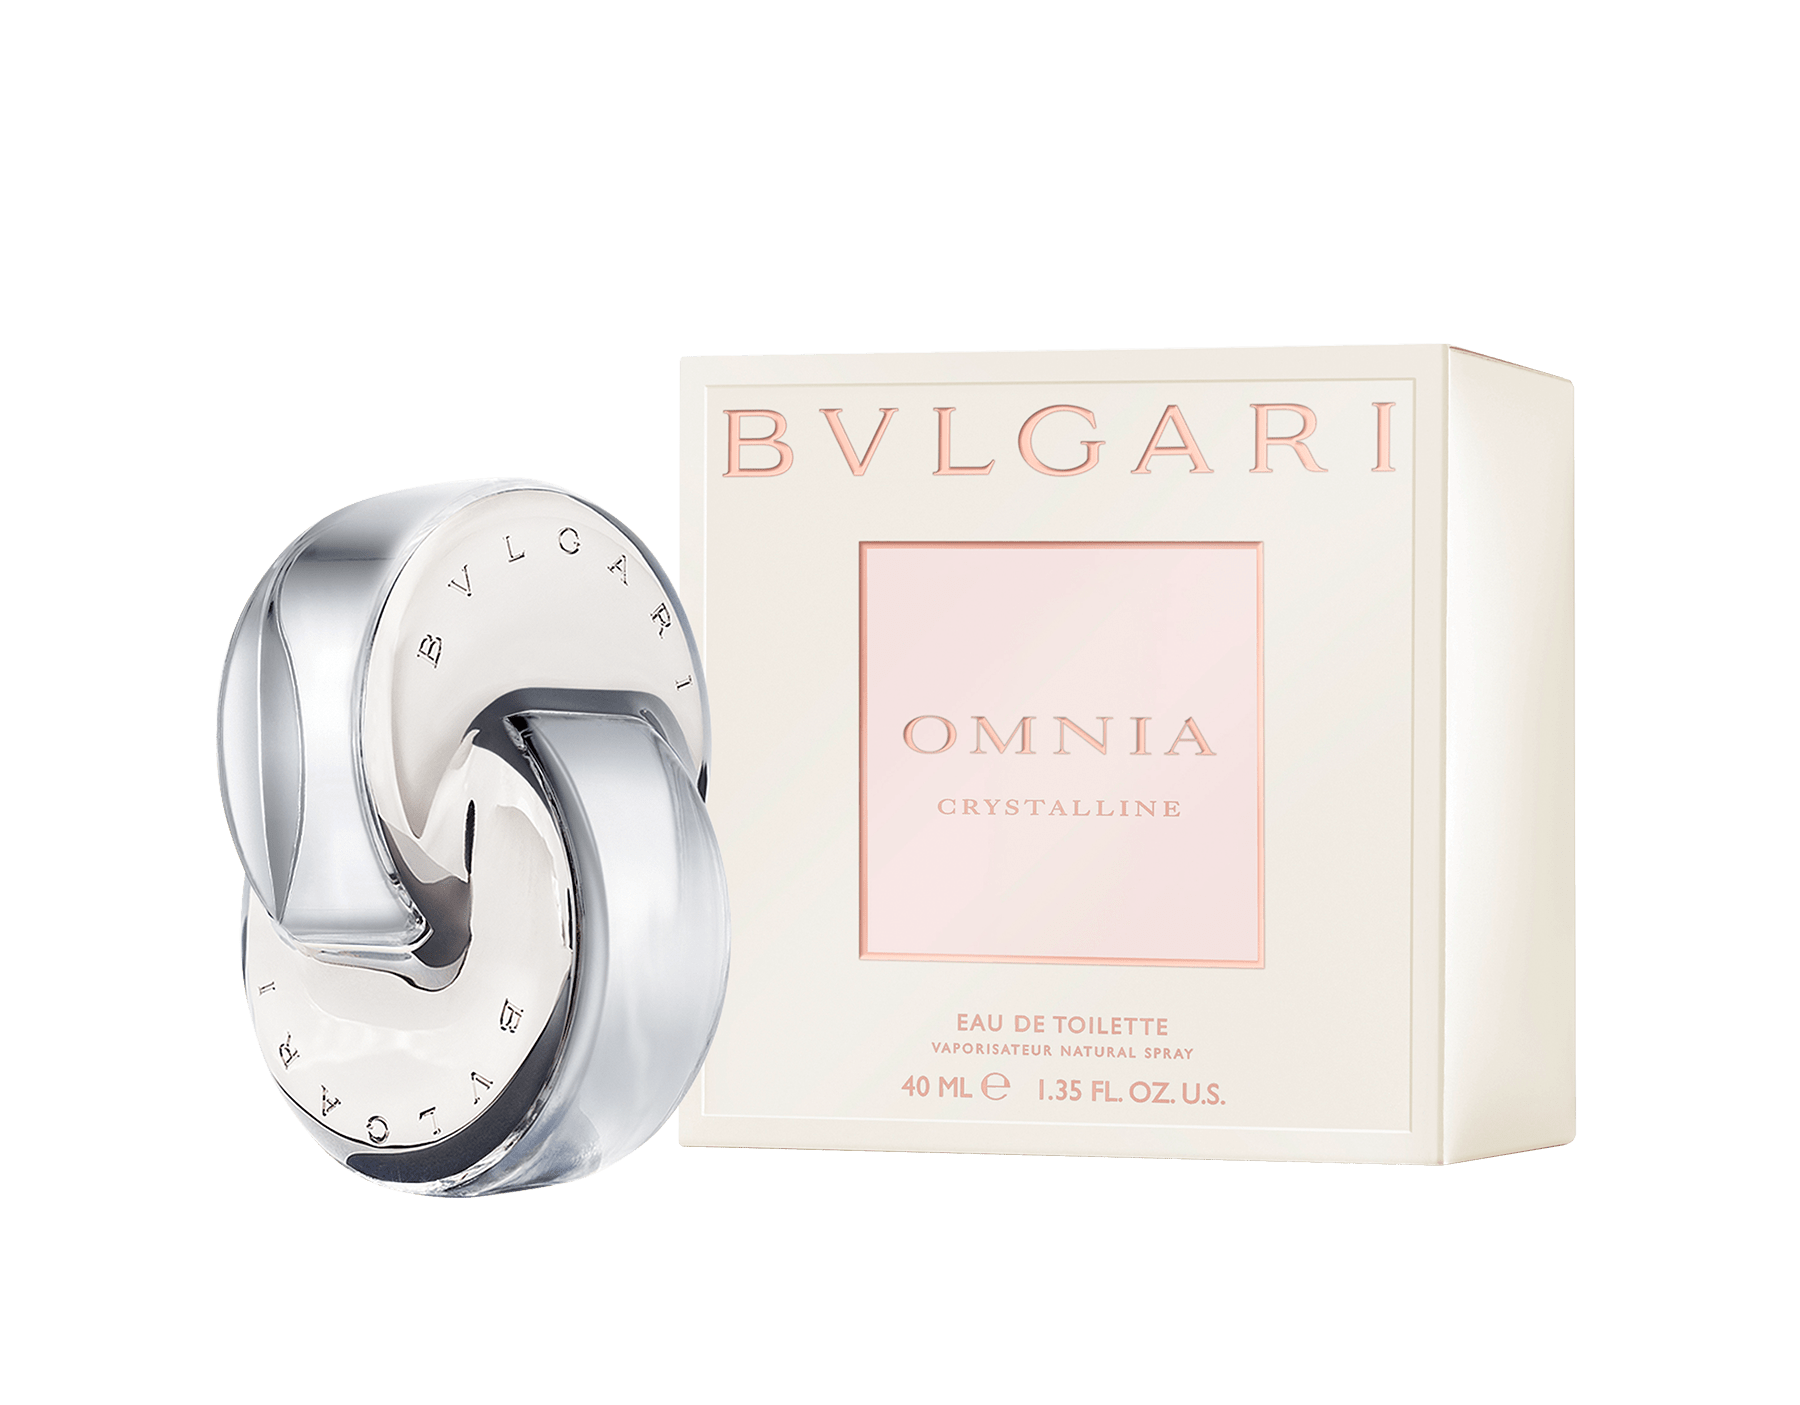 bvlgari perfume 40ml